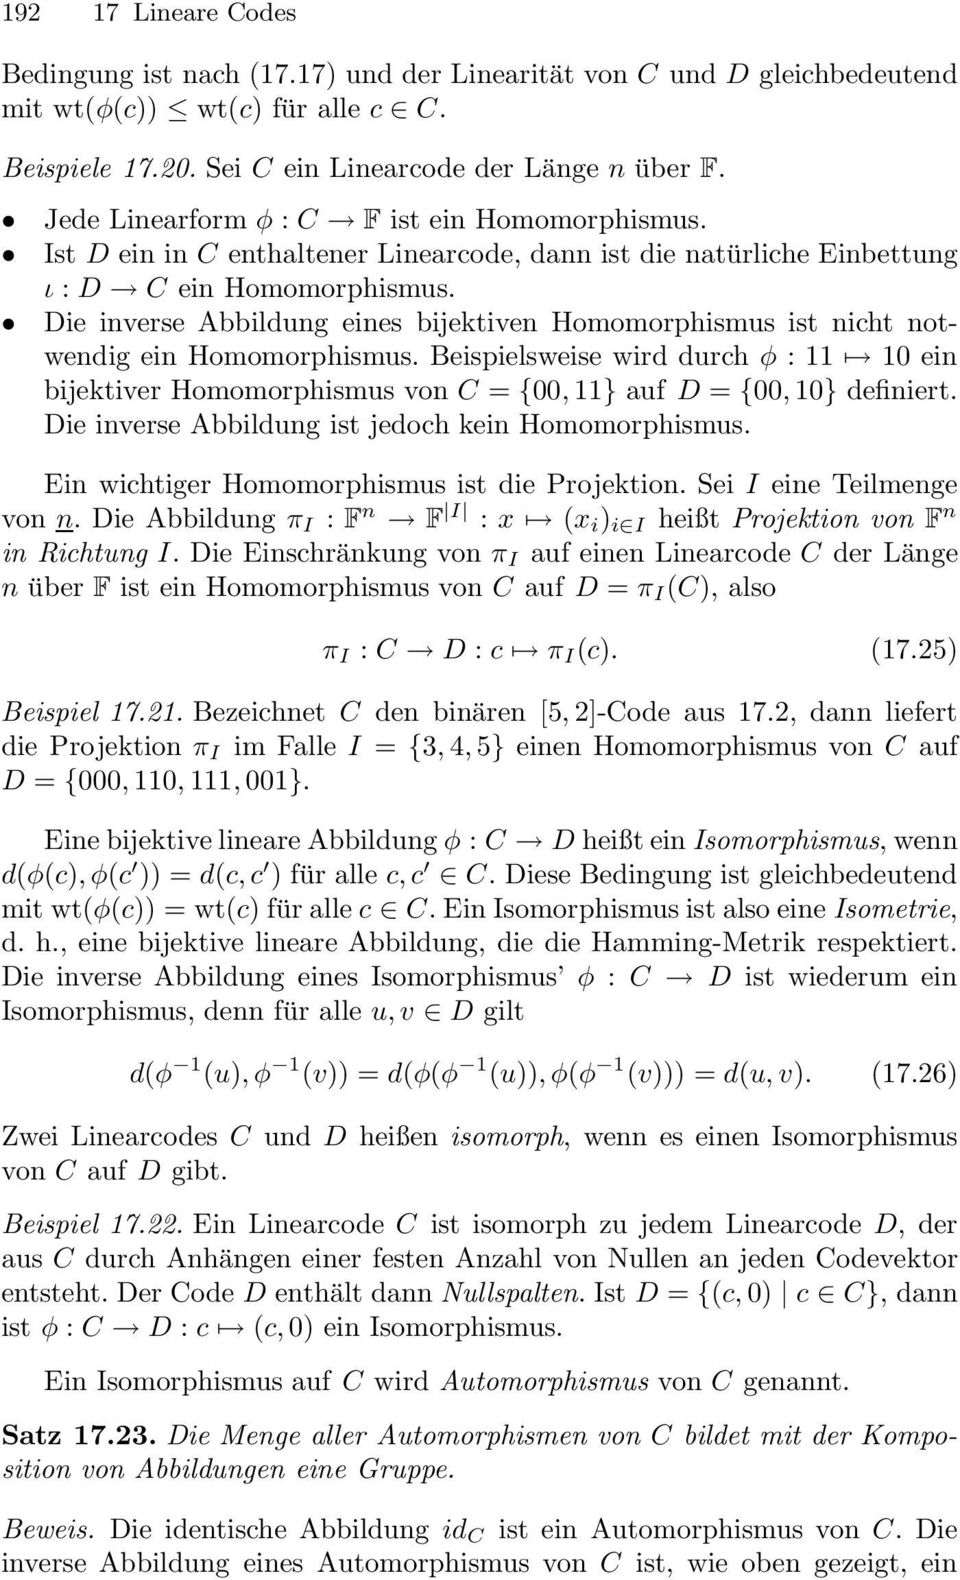 Die inverse Abbildung eines bijektiven Homomorphismus ist nicht notwendig ein Homomorphismus.